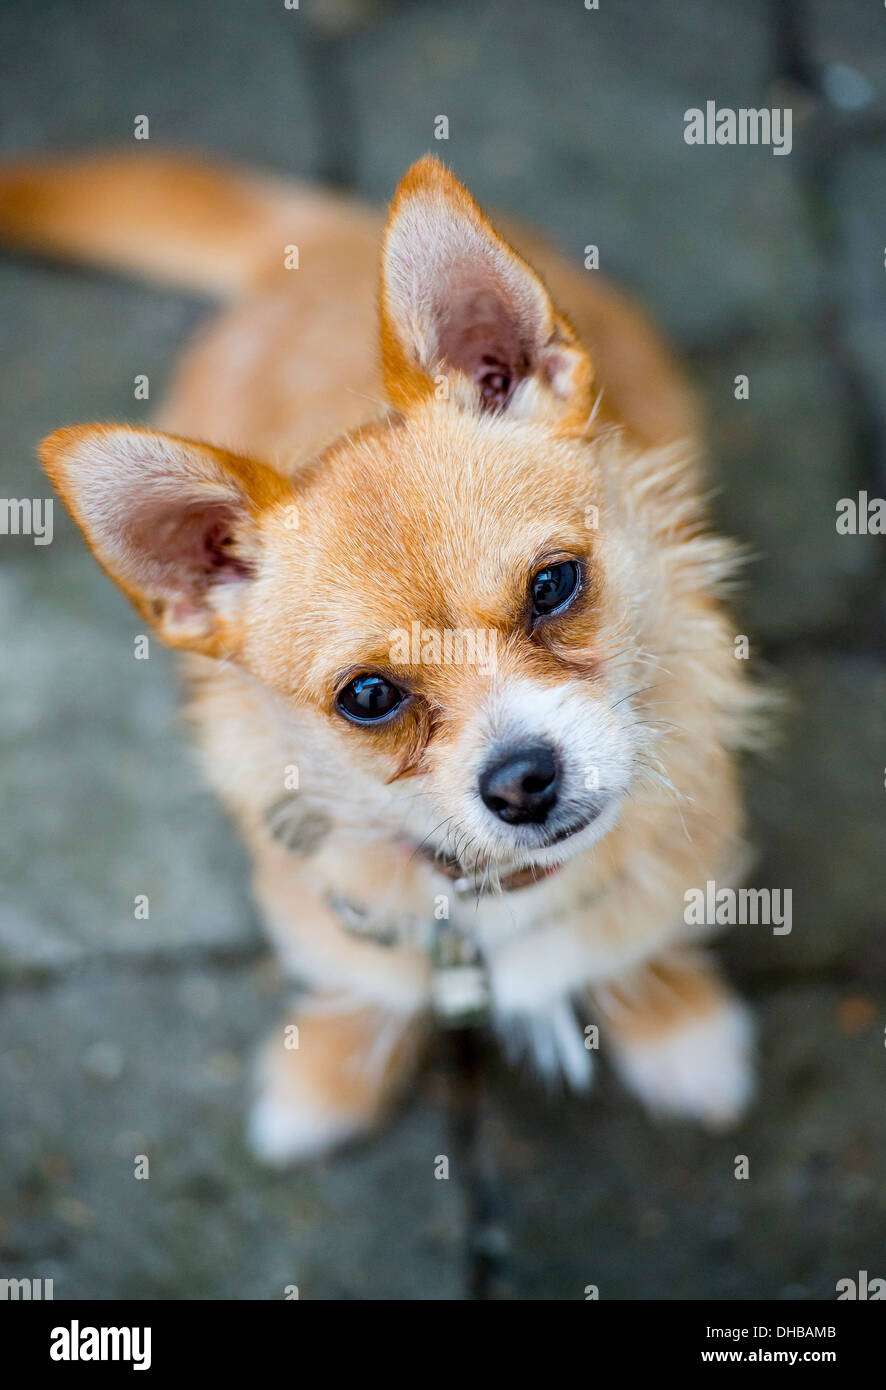 Un Chihuahua cruzó entre un Jack Russell perro mira a la cámara con ojos amorosos Foto de stock